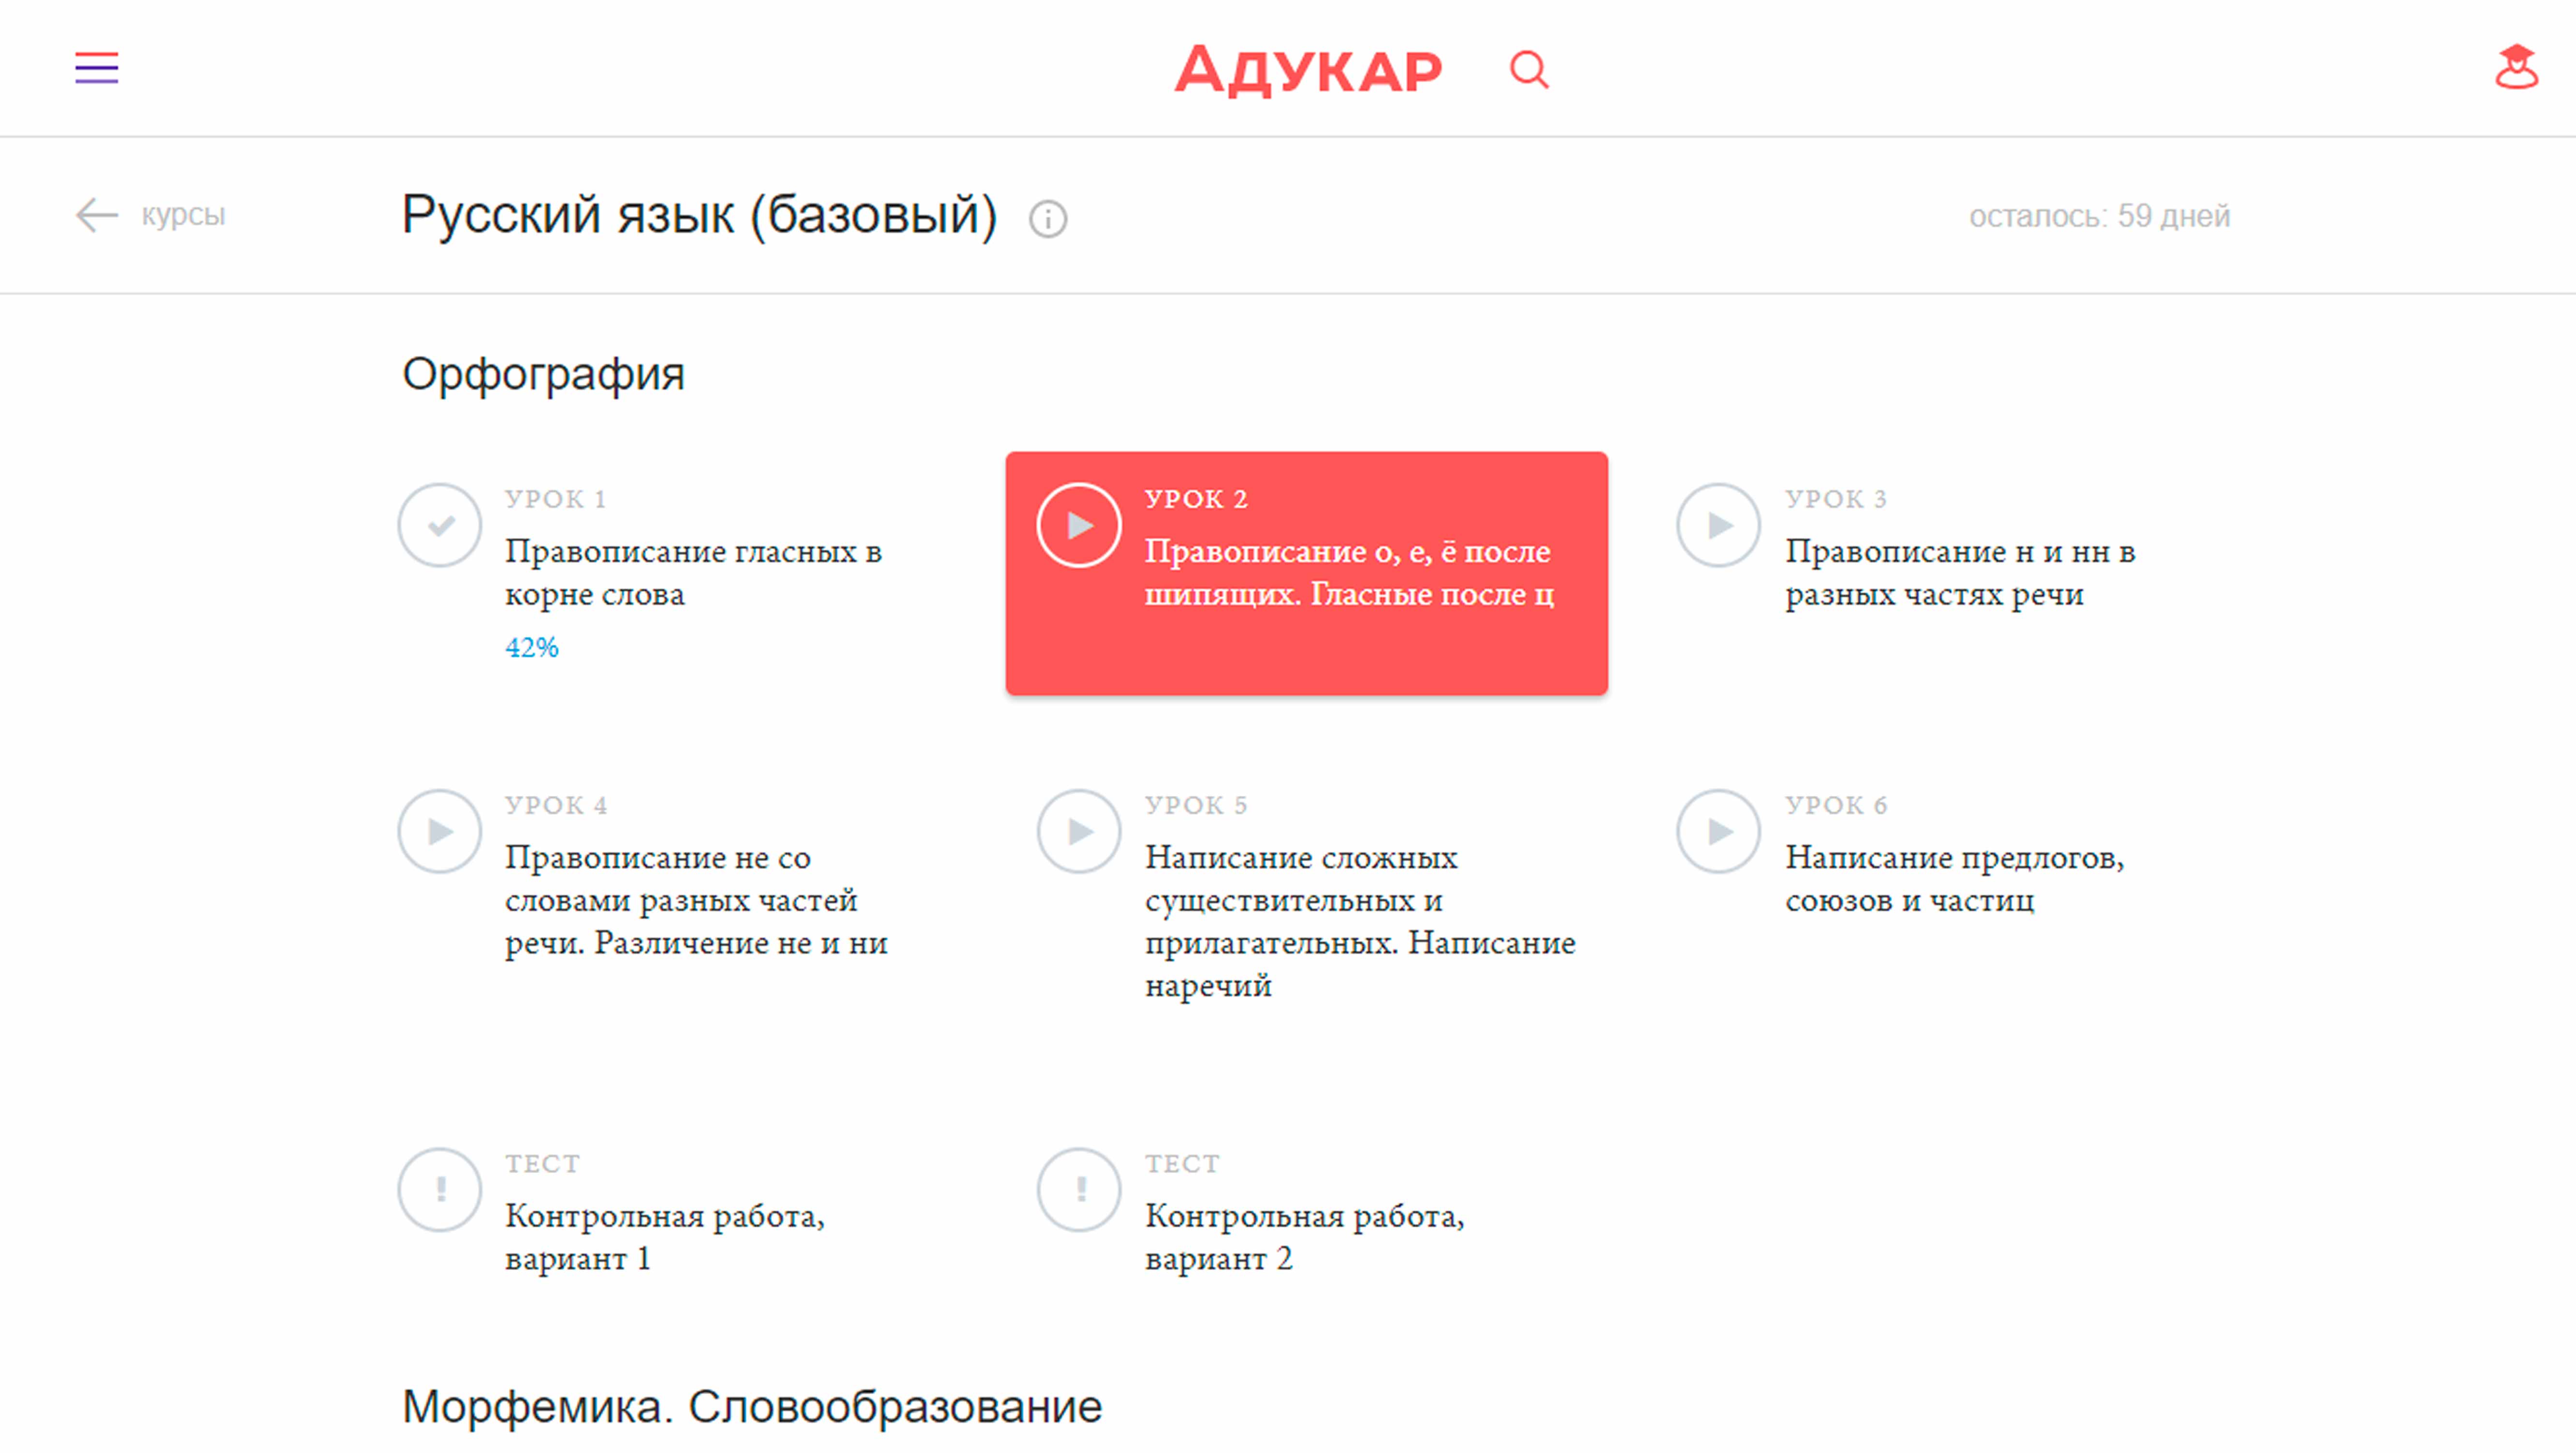 Каждый месяц мы открываем доступ к новому разделу русского языка. Продвинутый онлайн курс будет запущен в марте, сейчас доступны все разделы базового уровня